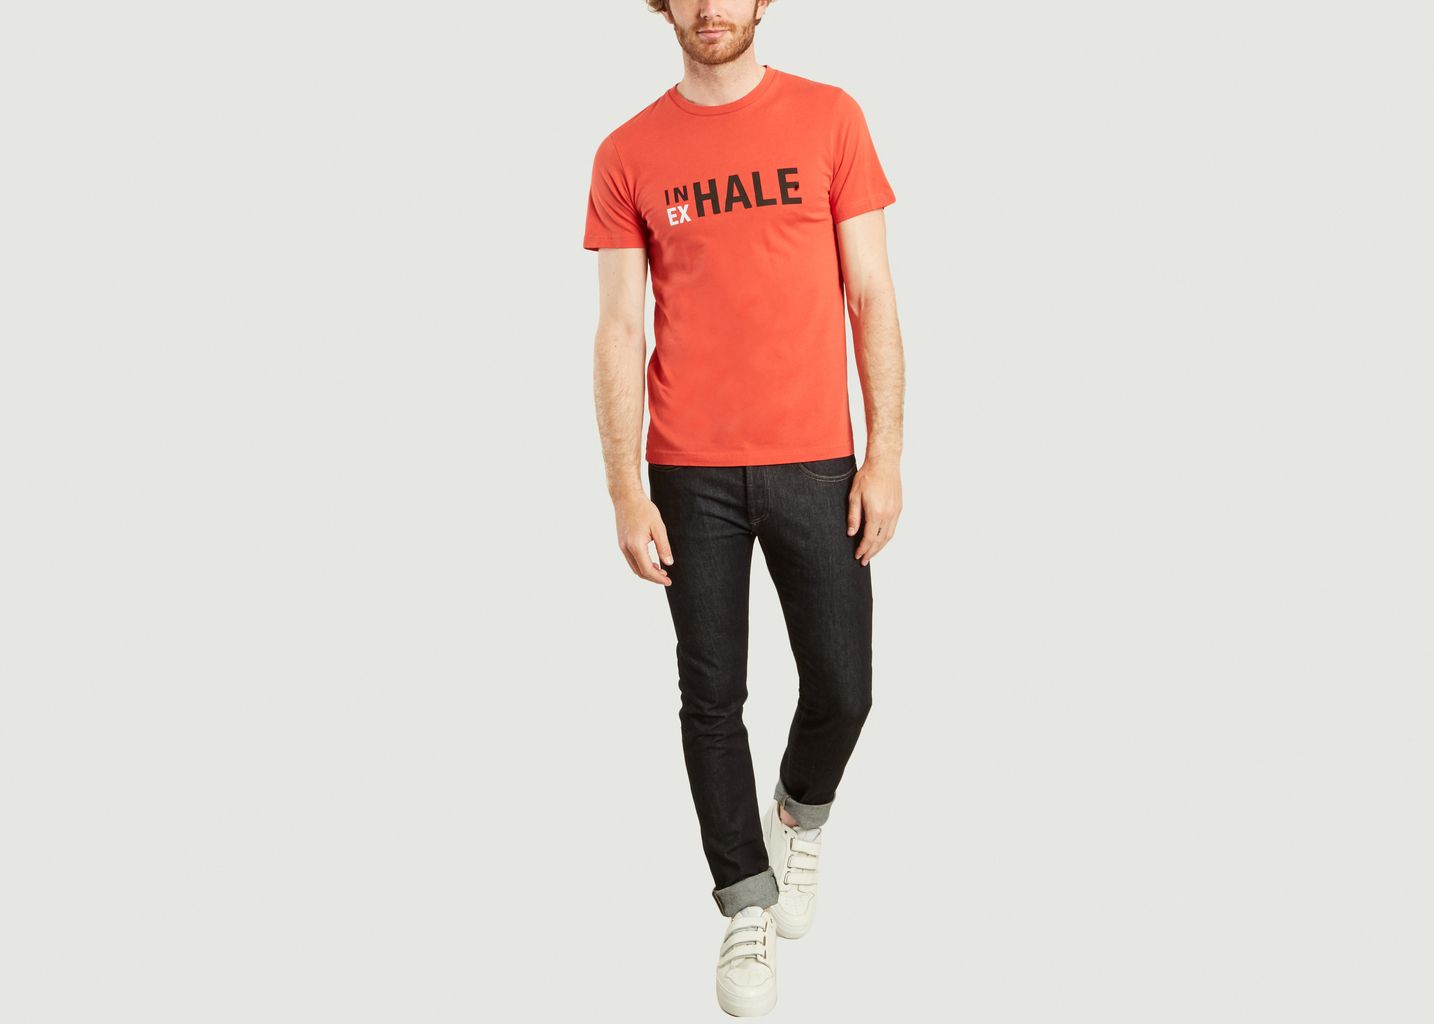 T-Shirt In Ex Hale - Ron Dorff